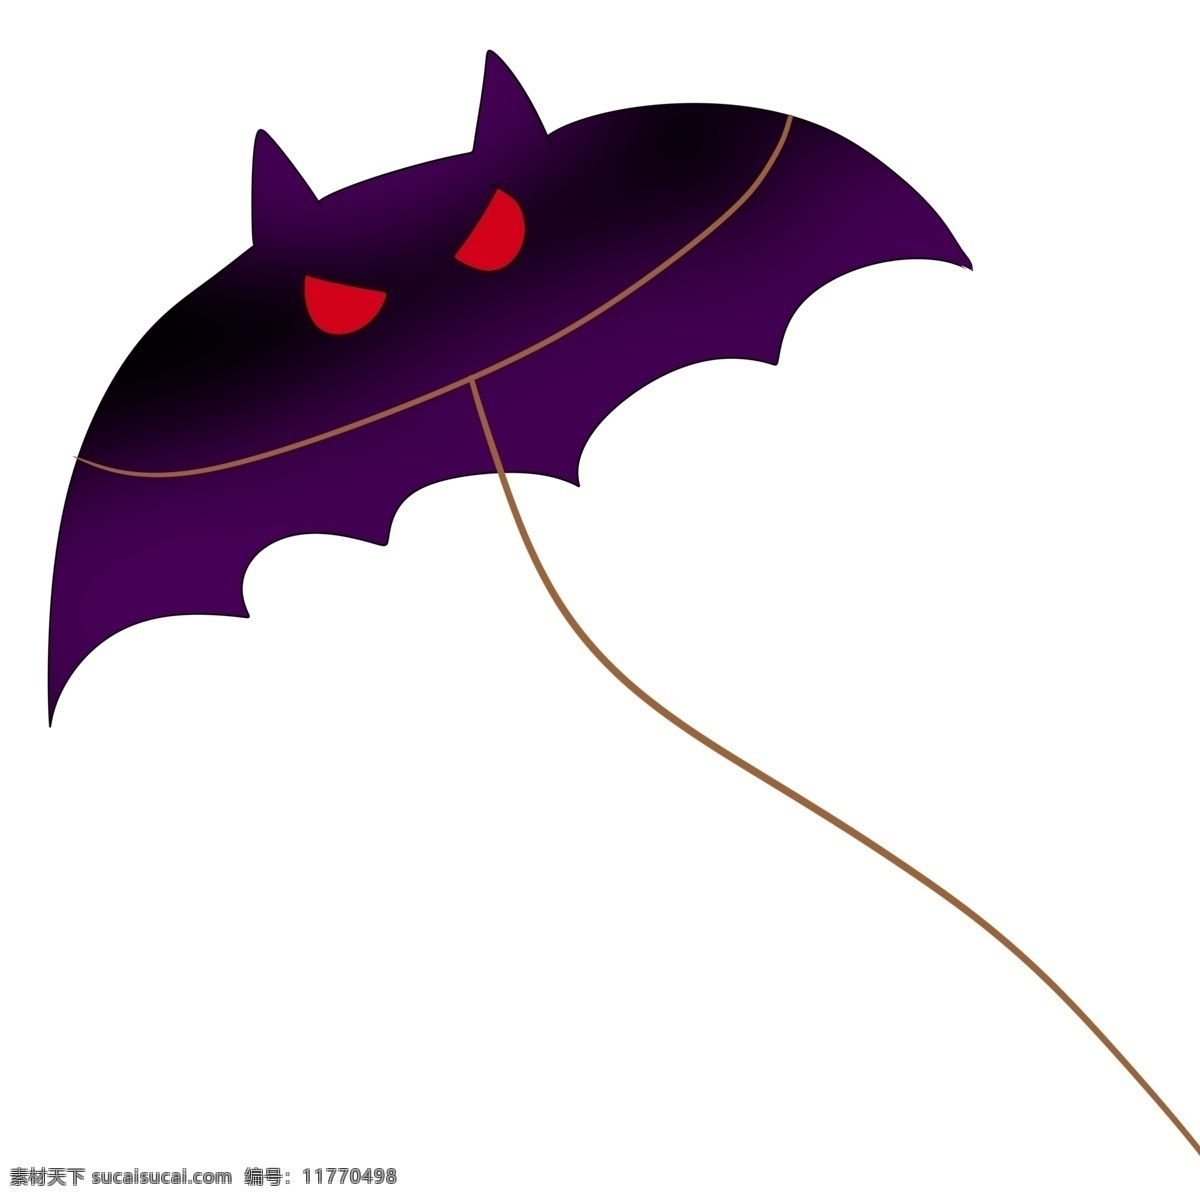 空中 飞行 蝙蝠 风筝 黑色蝙蝠风筝 漂亮的风筝 红色眼睛装饰 动物风筝 大风筝 黑色